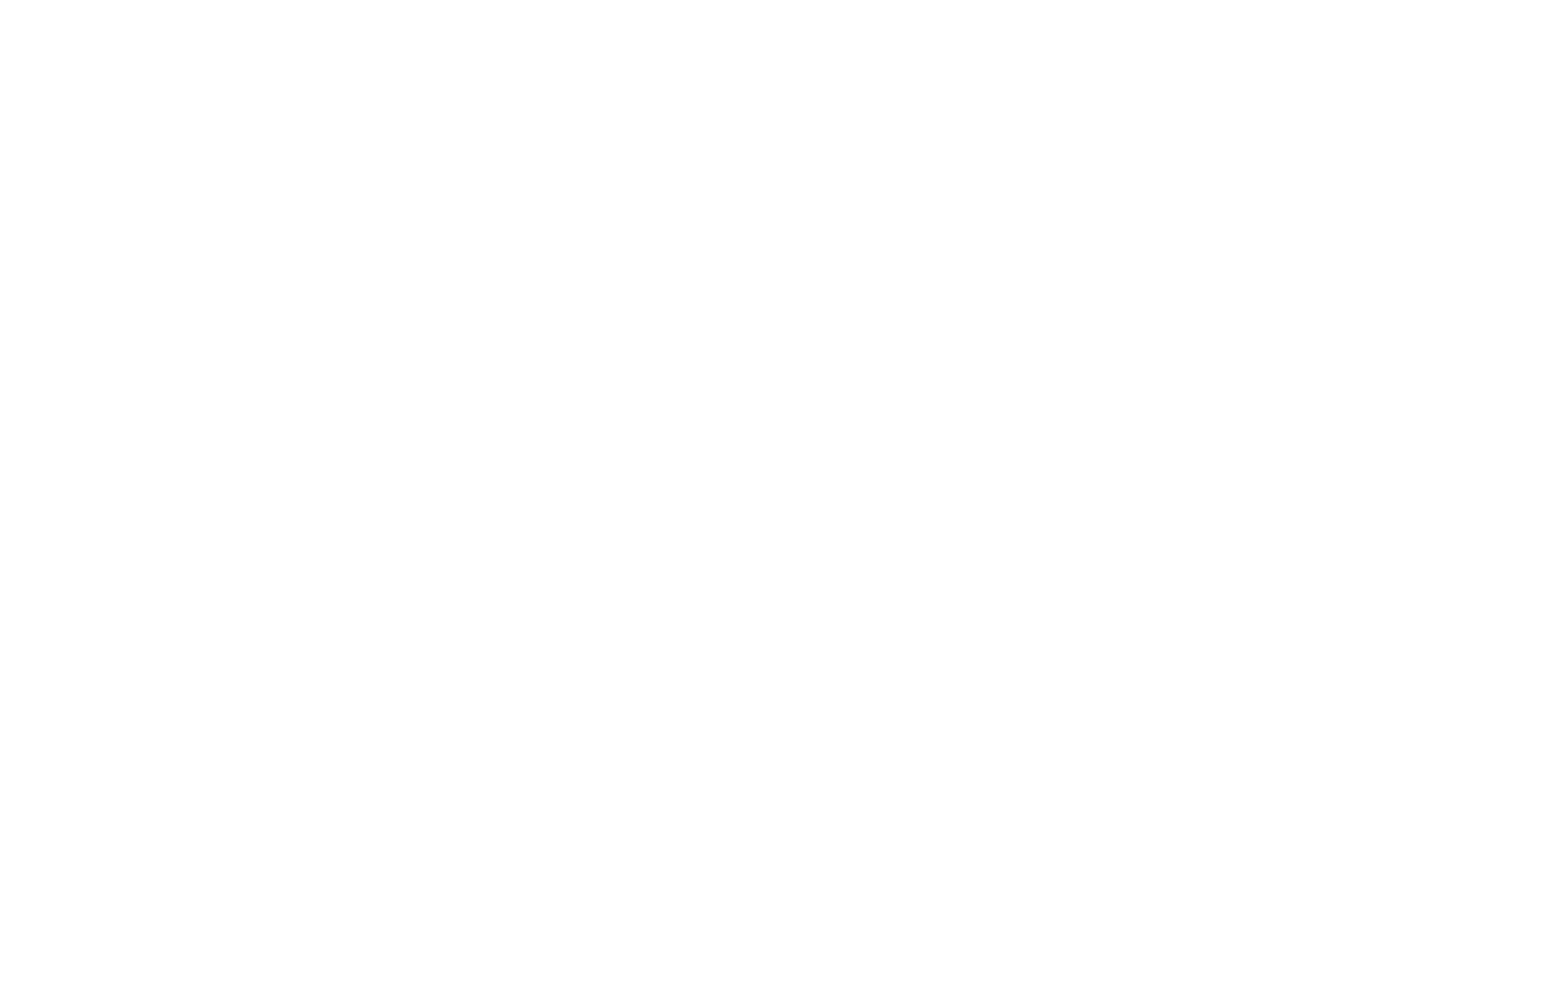 Sterling Bancorp logo for dark backgrounds (transparent PNG)